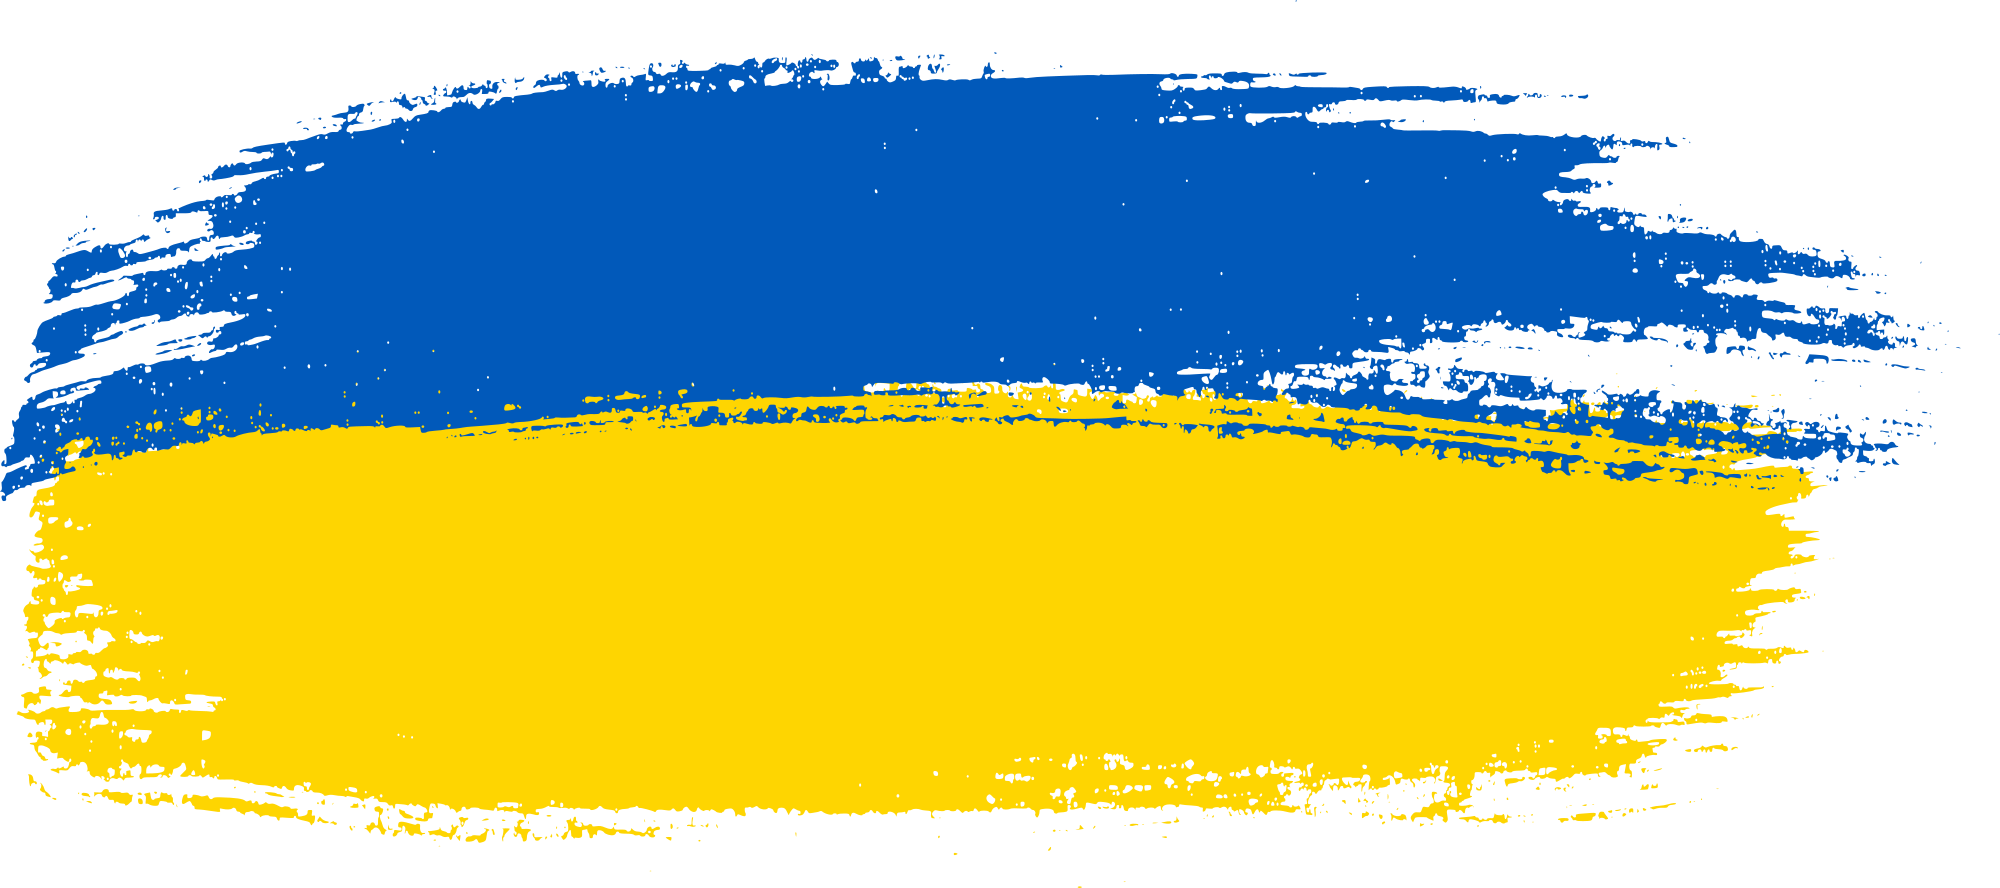 Unterstütze die Ukraine